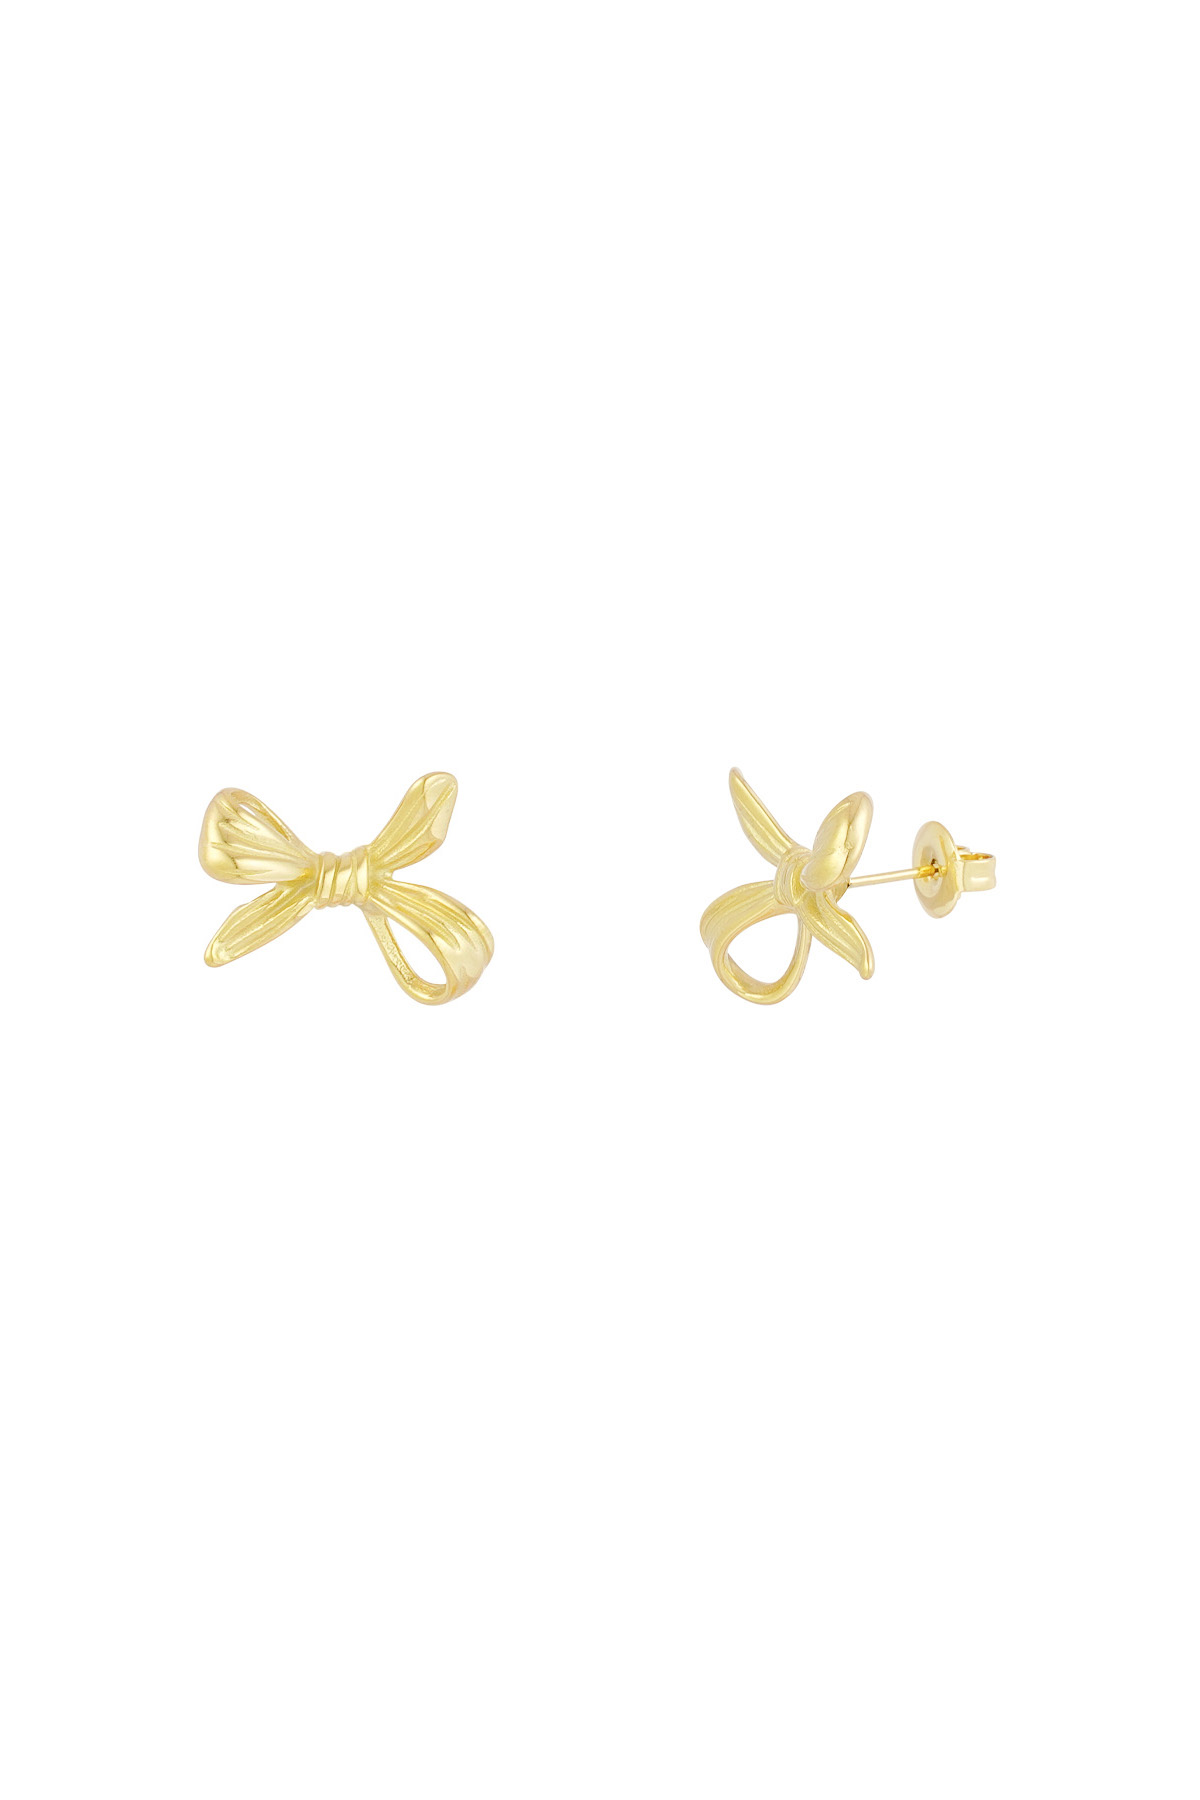 Upside down bow earrings - gold 